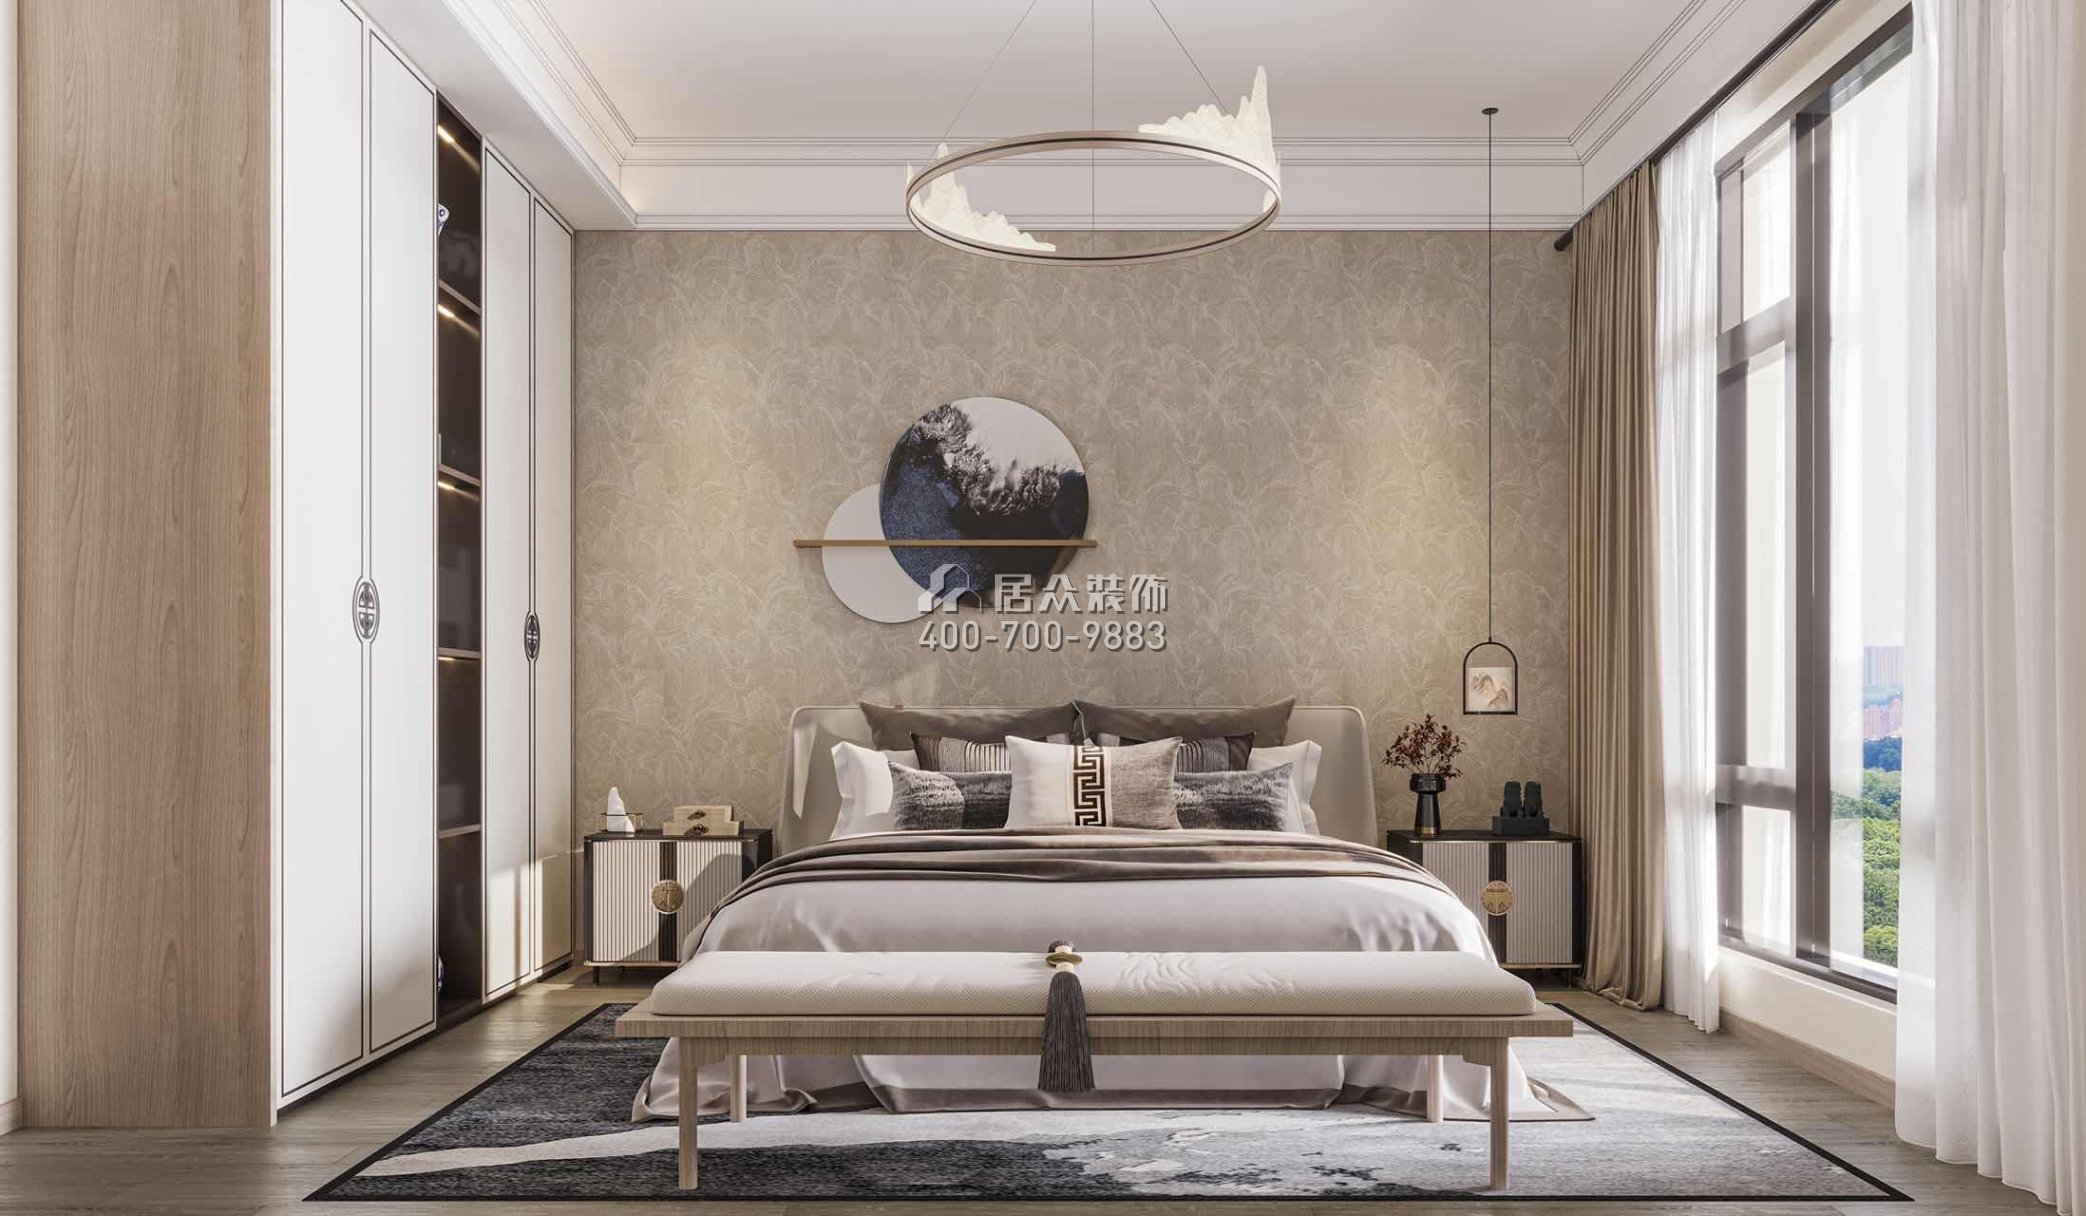 中海汤泉450平方米中式风格别墅户型卧室装修效果图